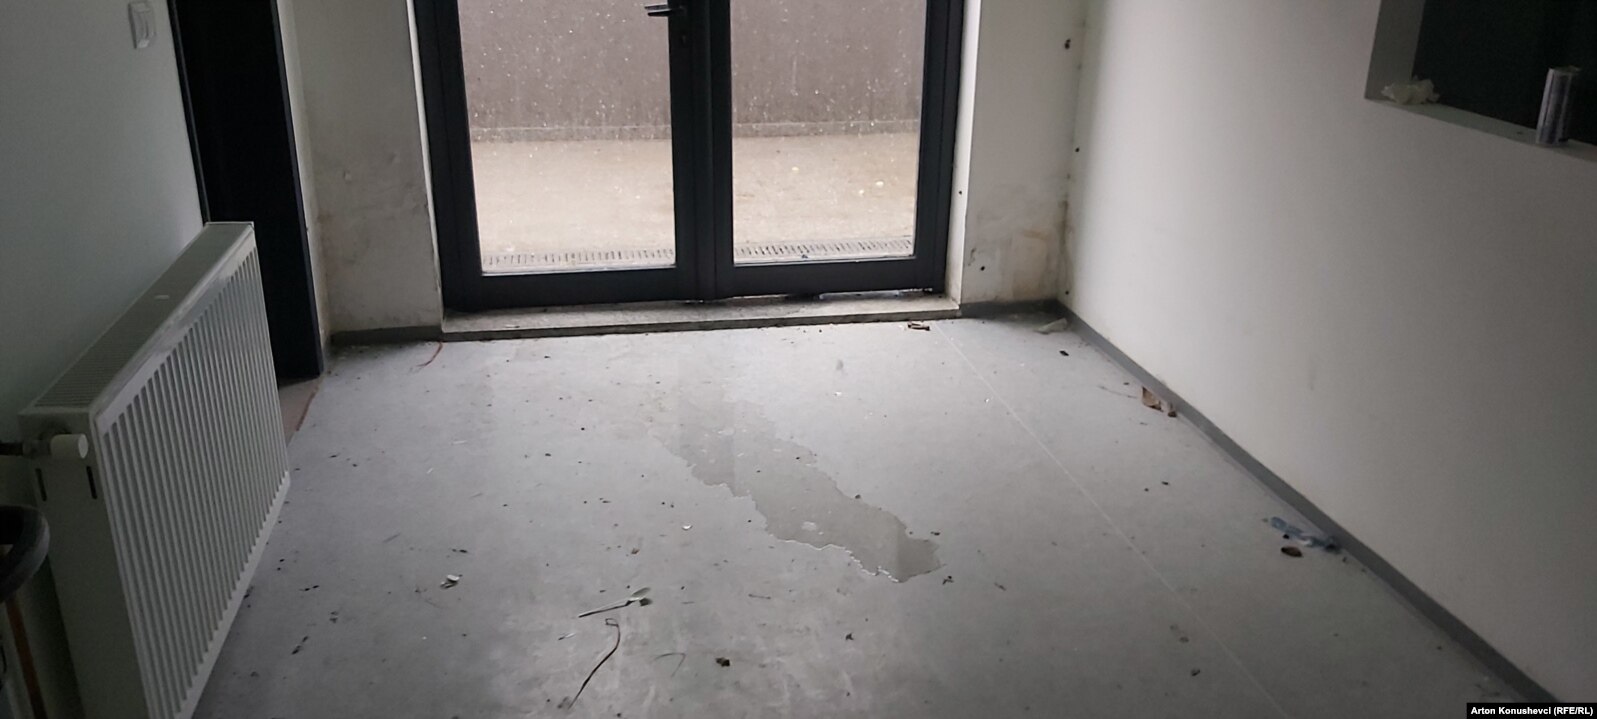 Shiu depërton brenda klinikës në katin e parë. Veç ujit, shihet edhe dyshemeja e papastër dhe e dëmtuar nga uji.